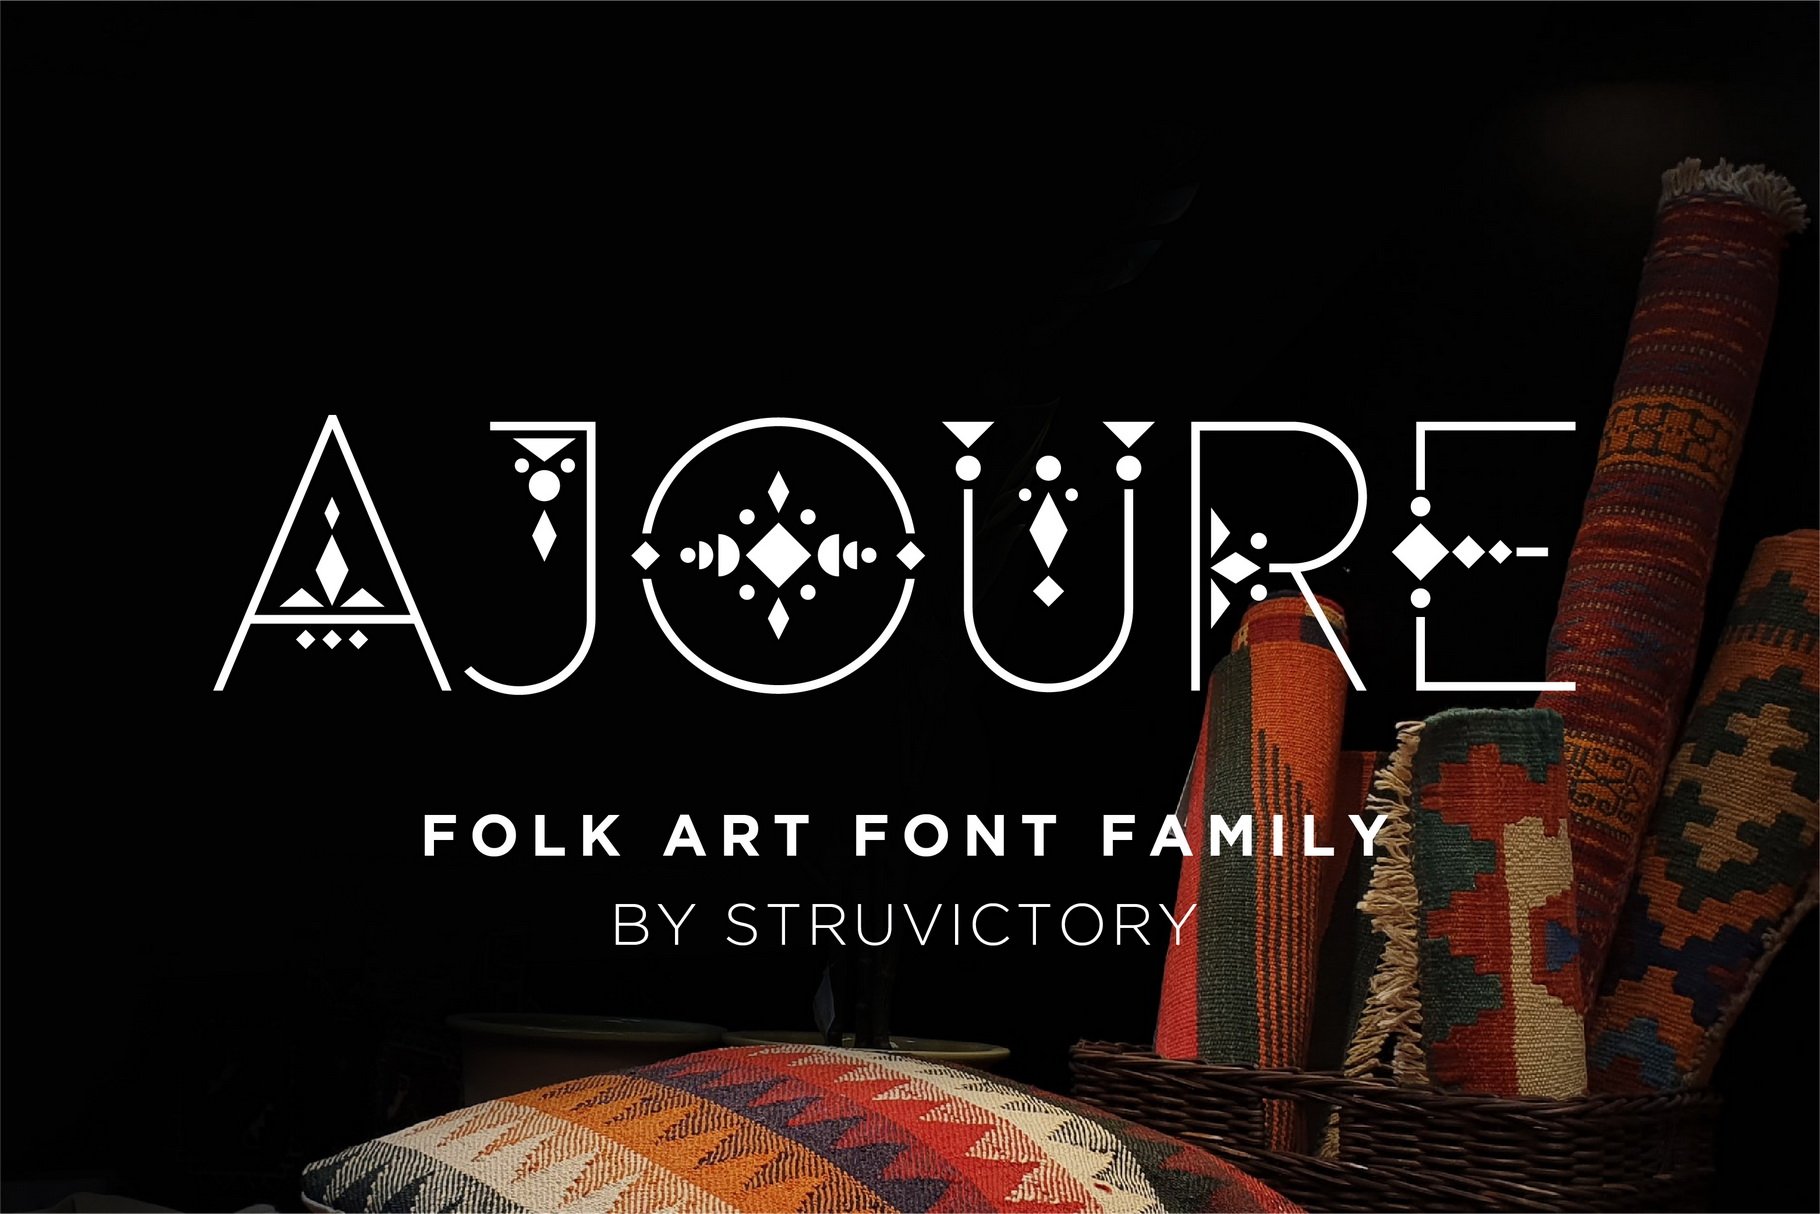 Ajoure - Folk Art Logo Font Family cover image.